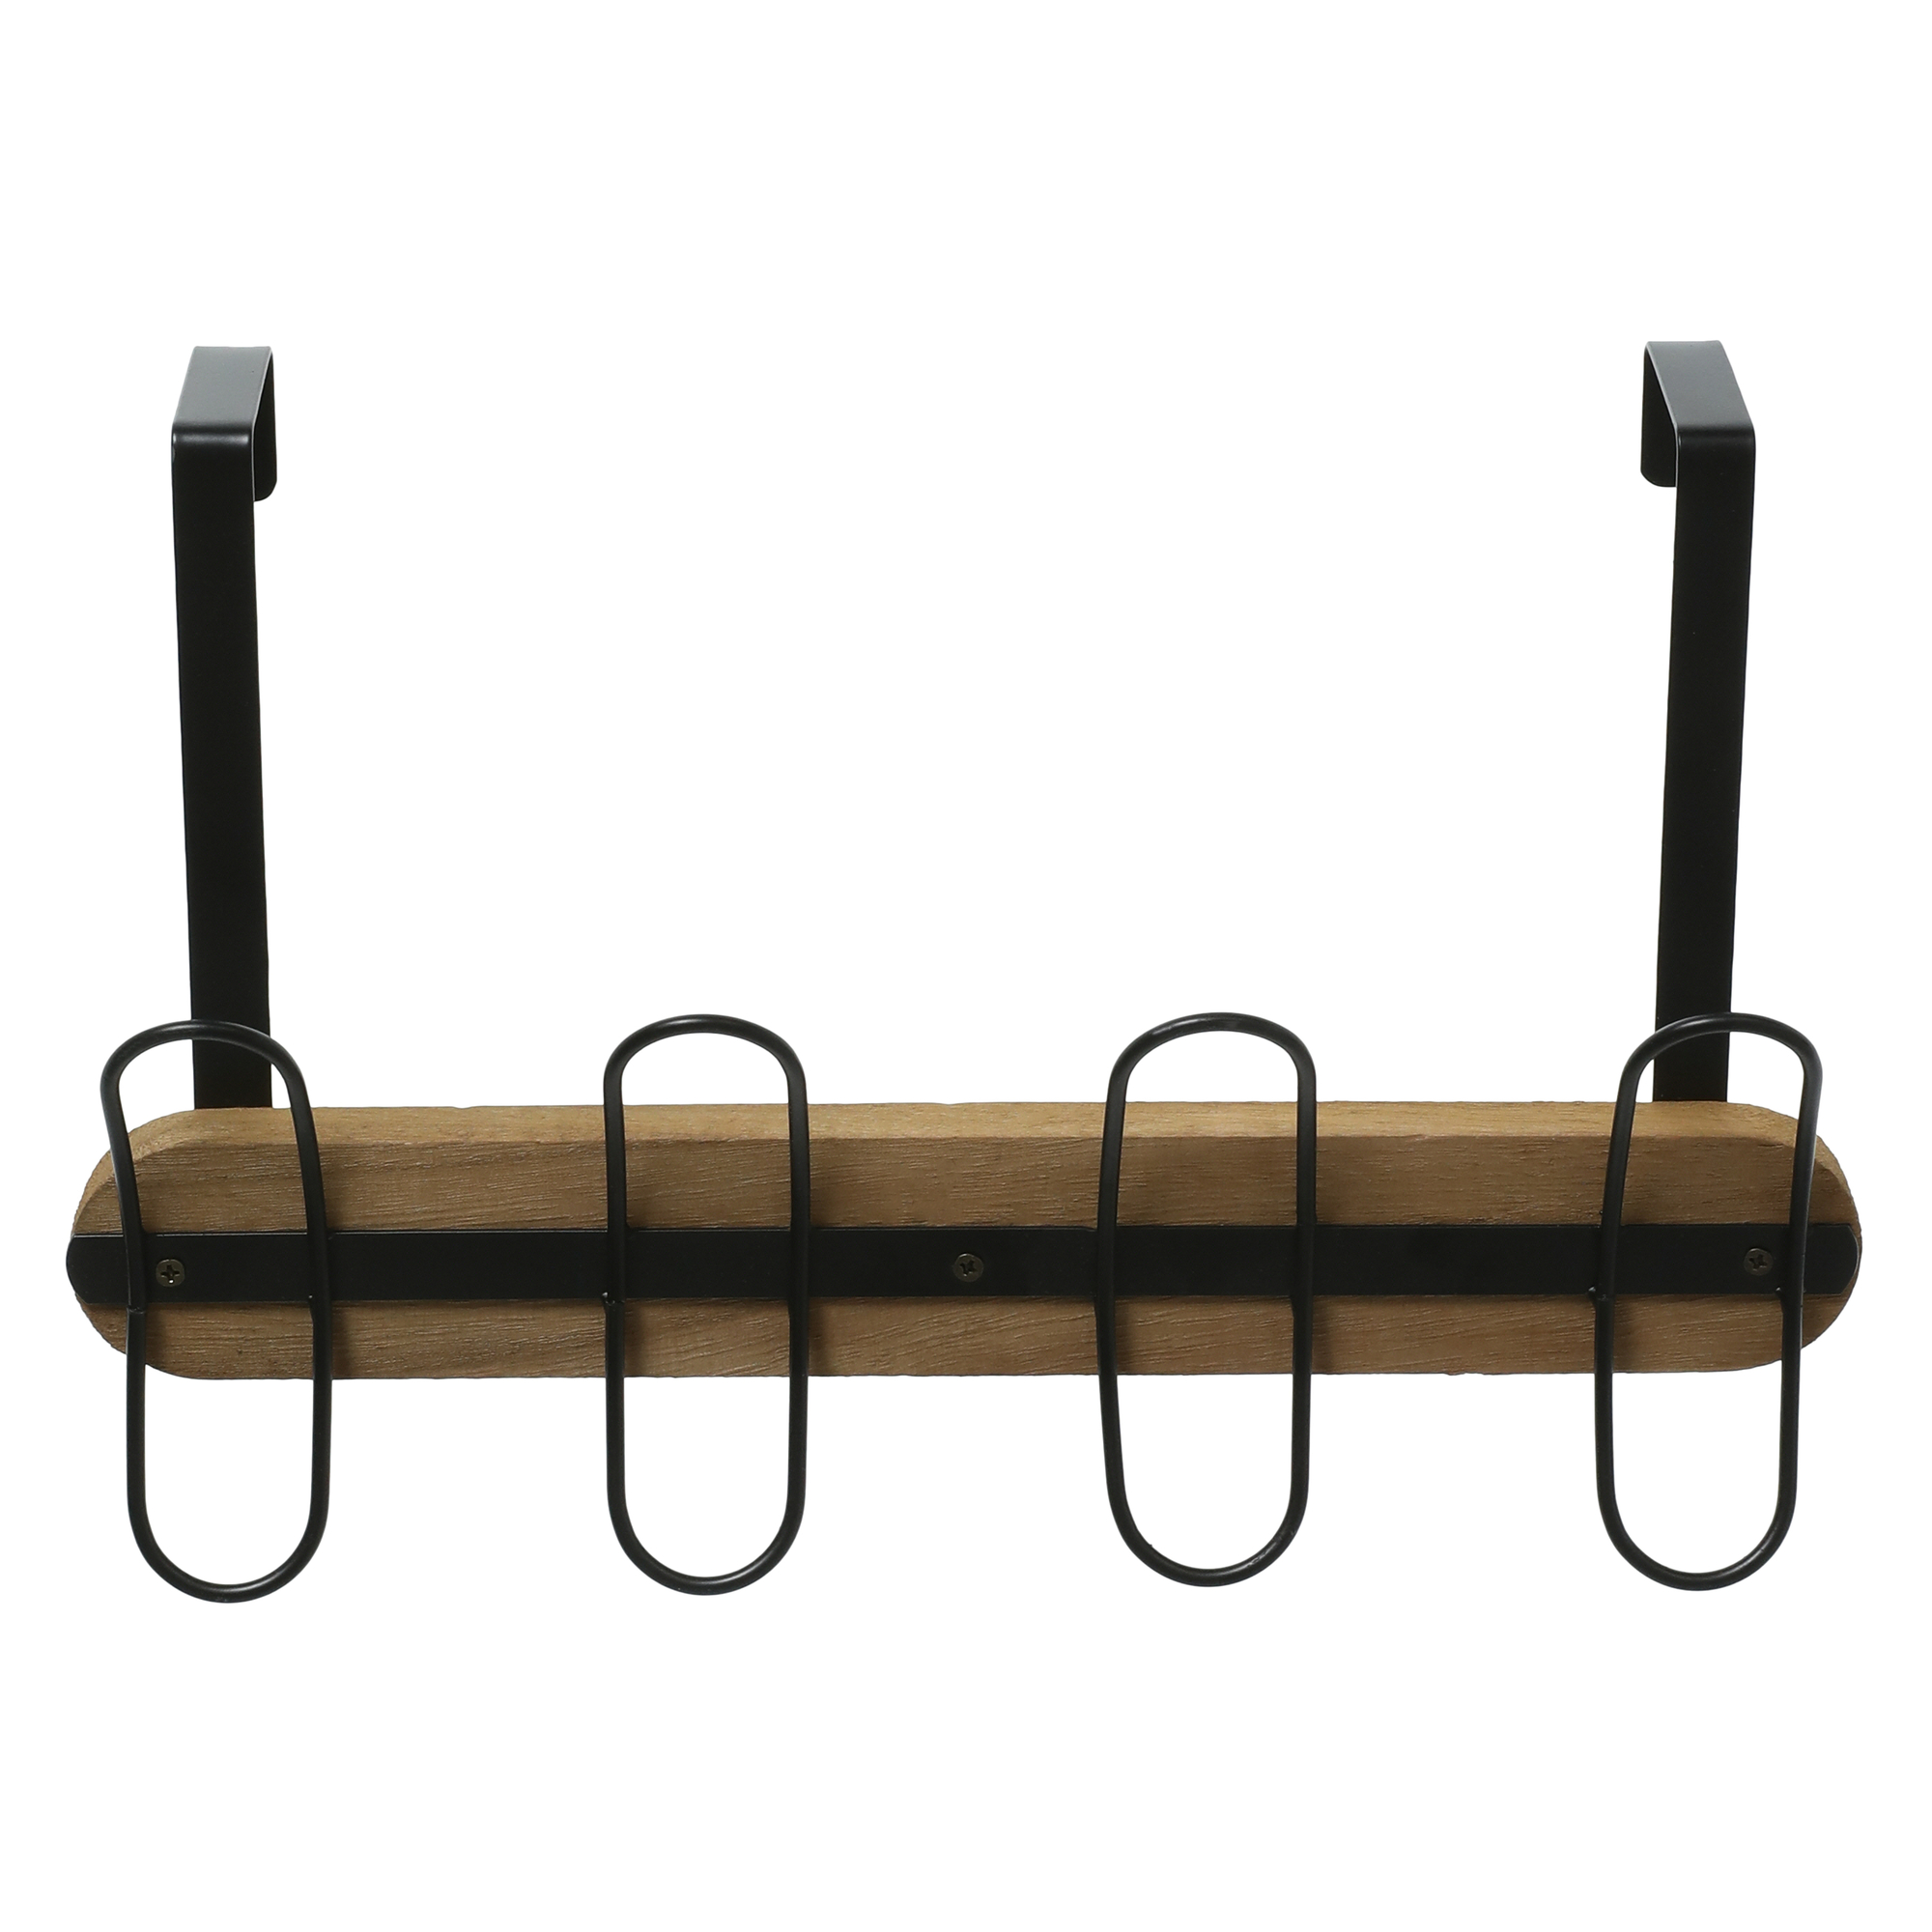 Five Below Over-the-door metal & wood hook rack